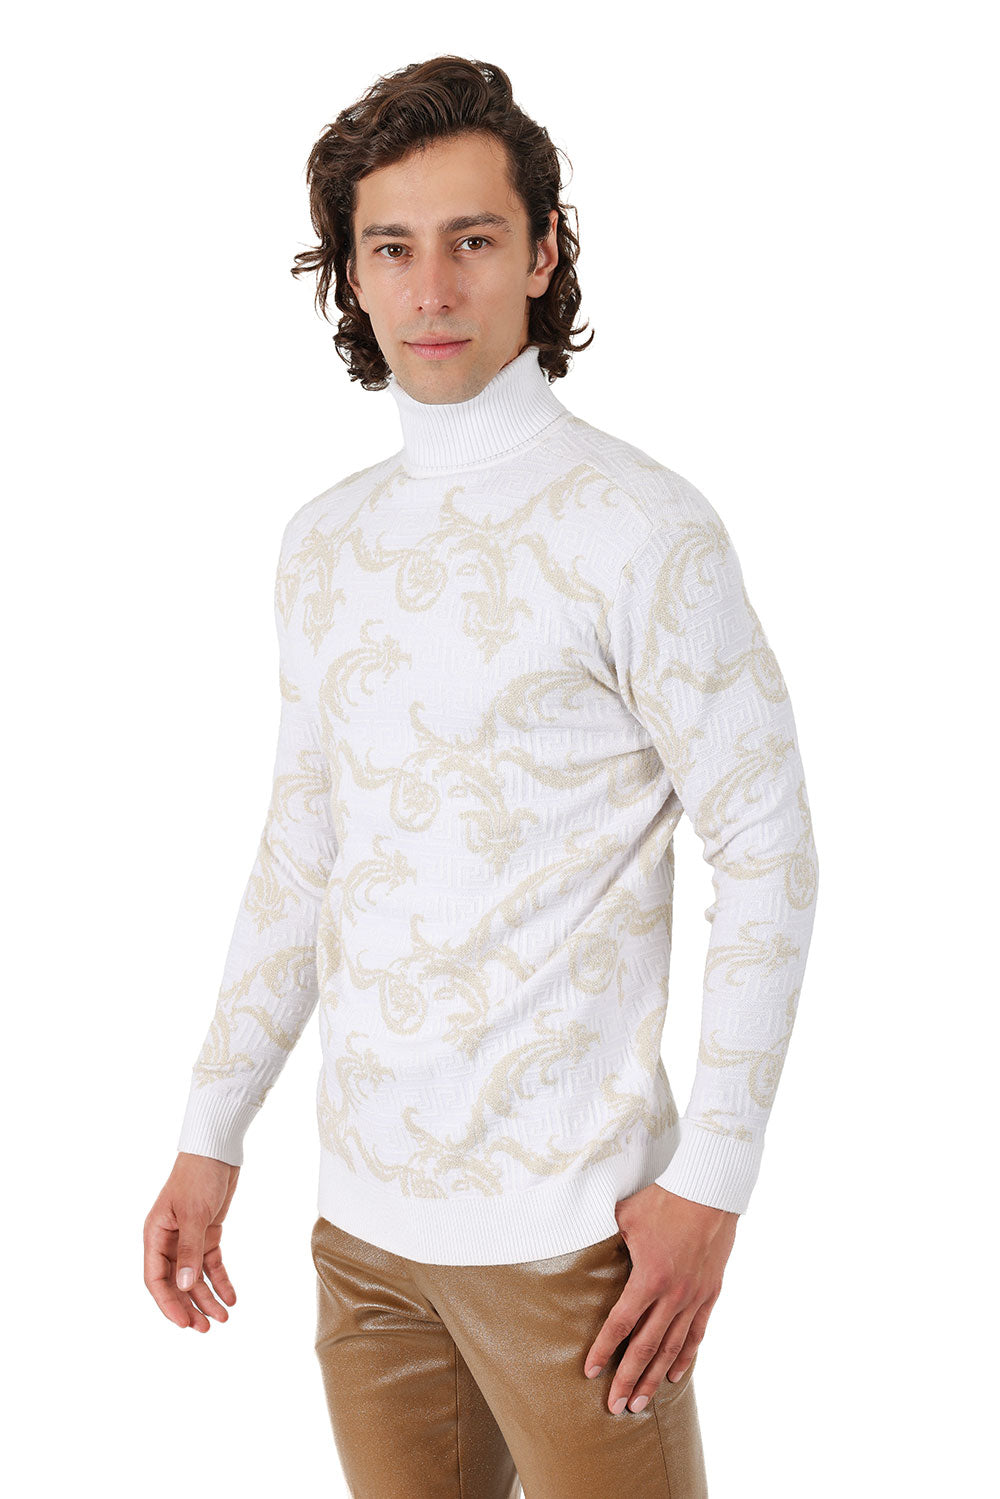 Barabas Men's Floral Design Long Sleeve Turtleneck Sweater 2LS2102 White Gold